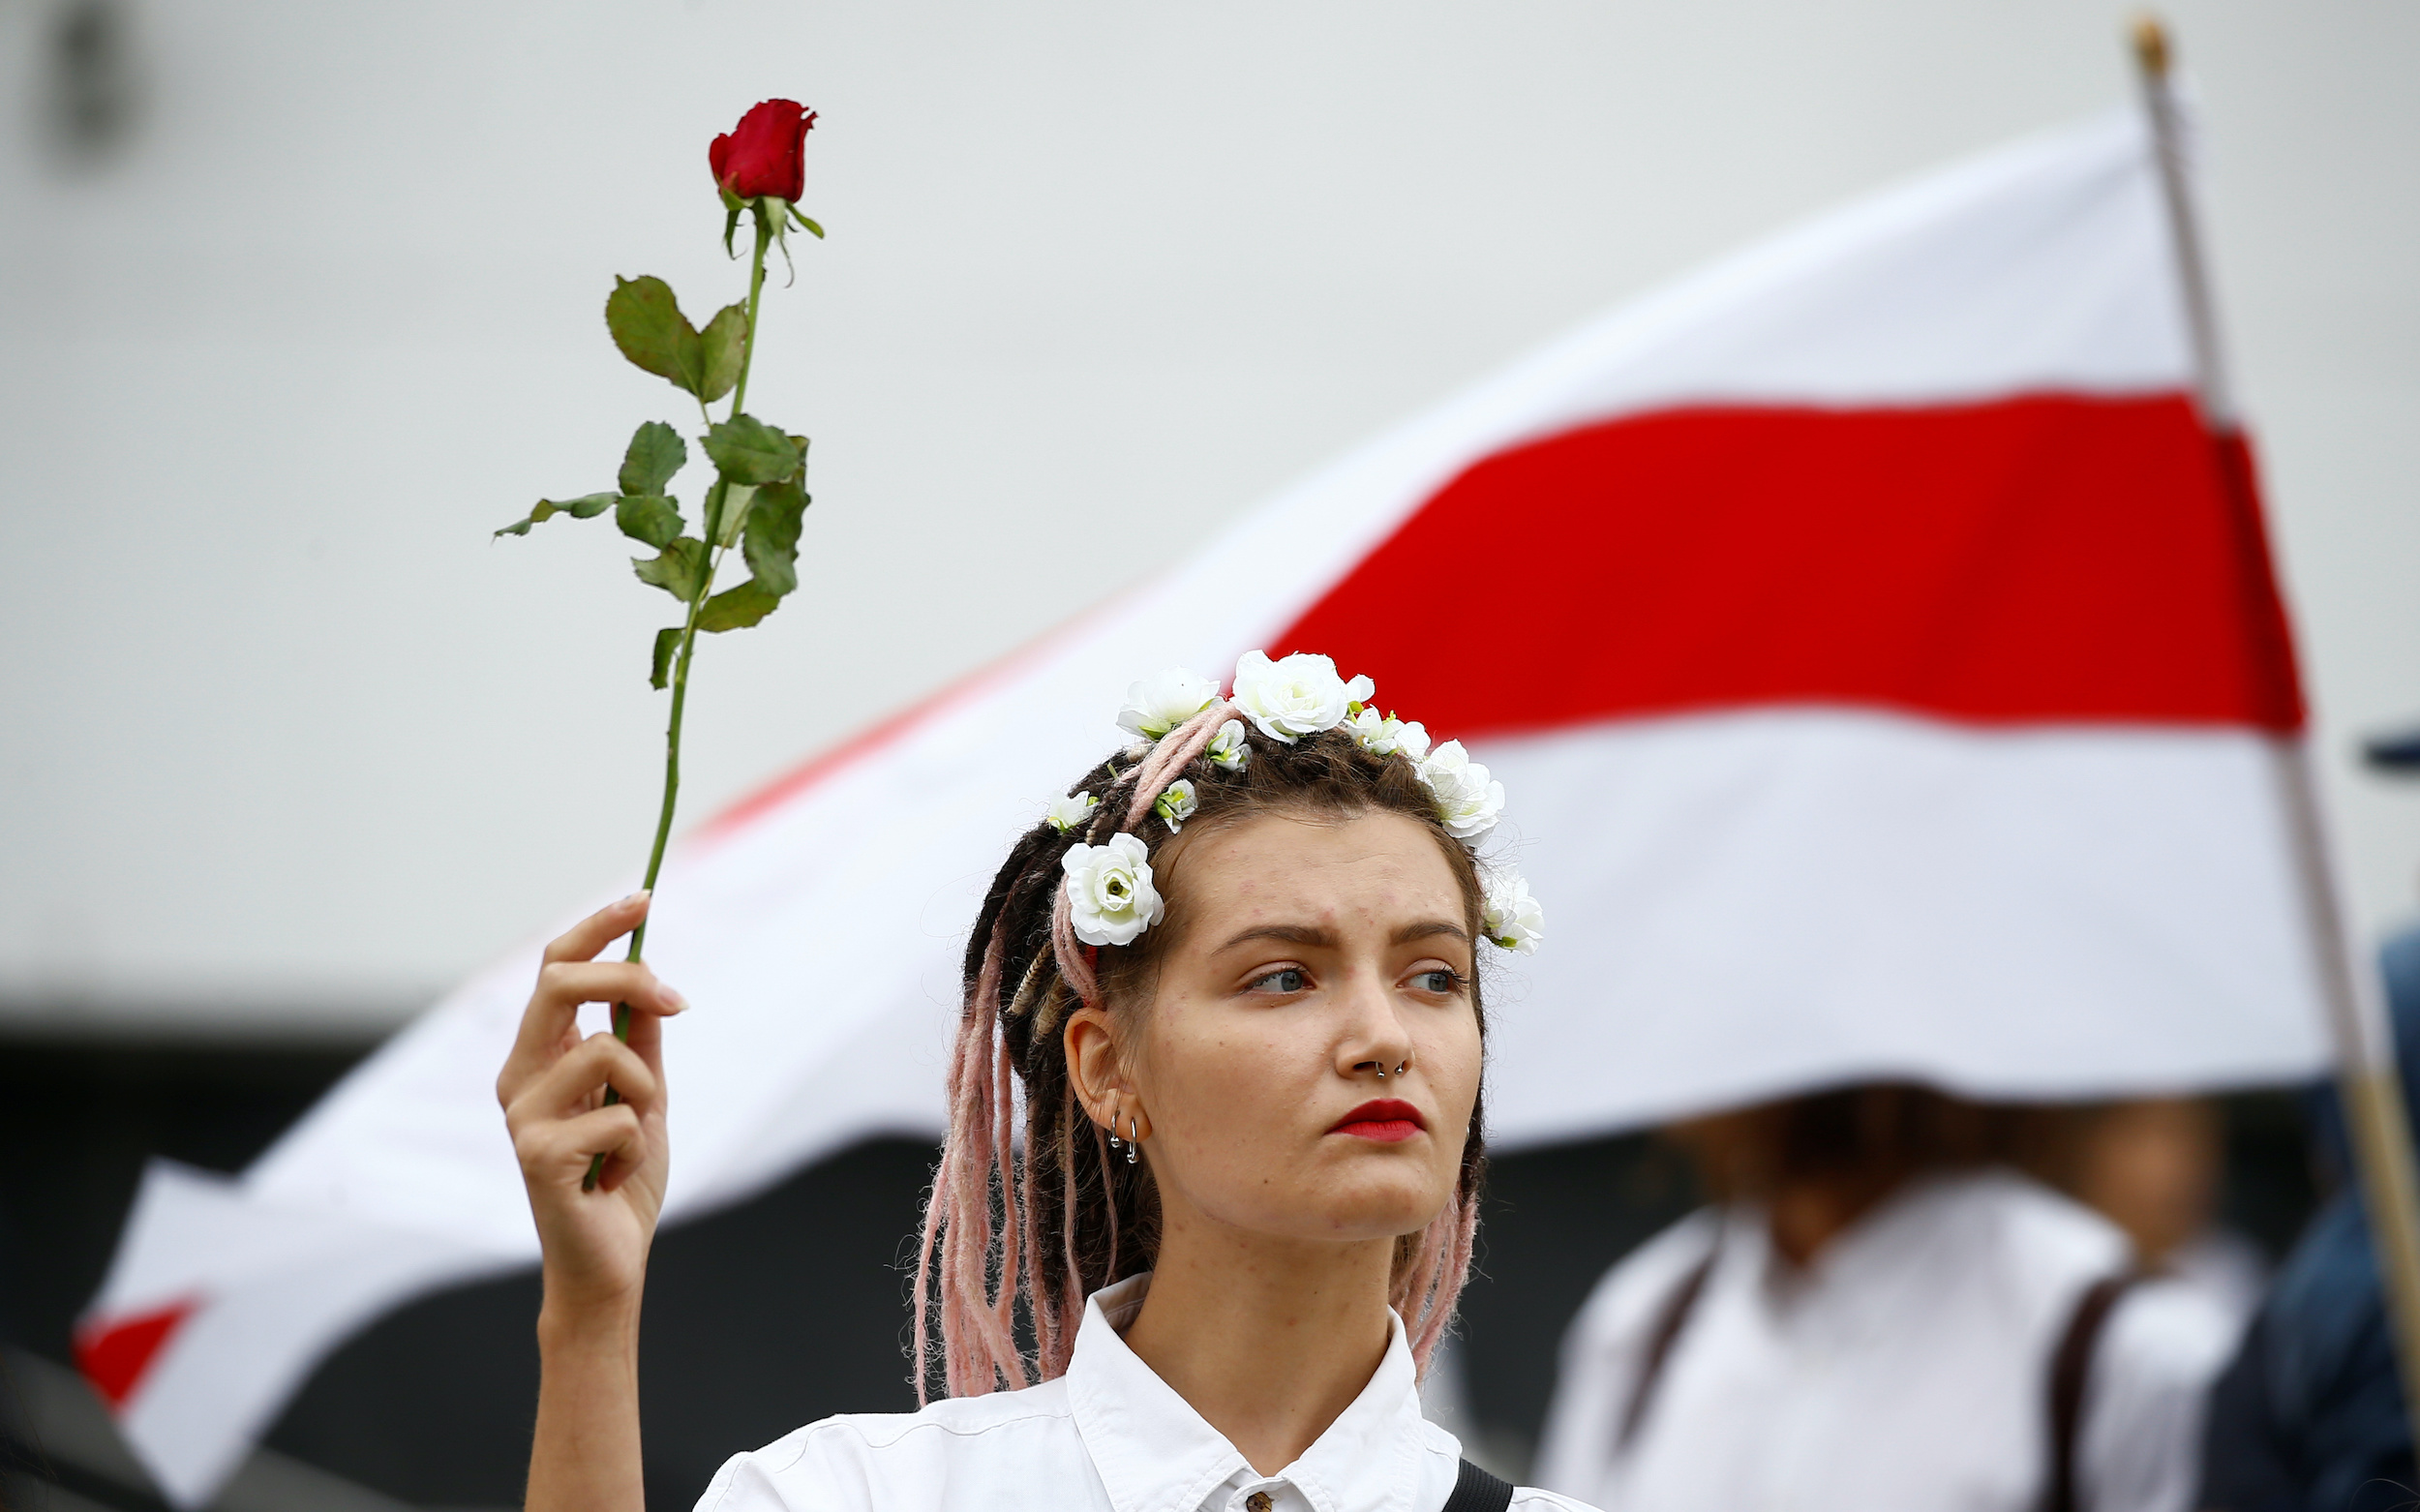 Как Минске прошла массовая женская акция против насилия